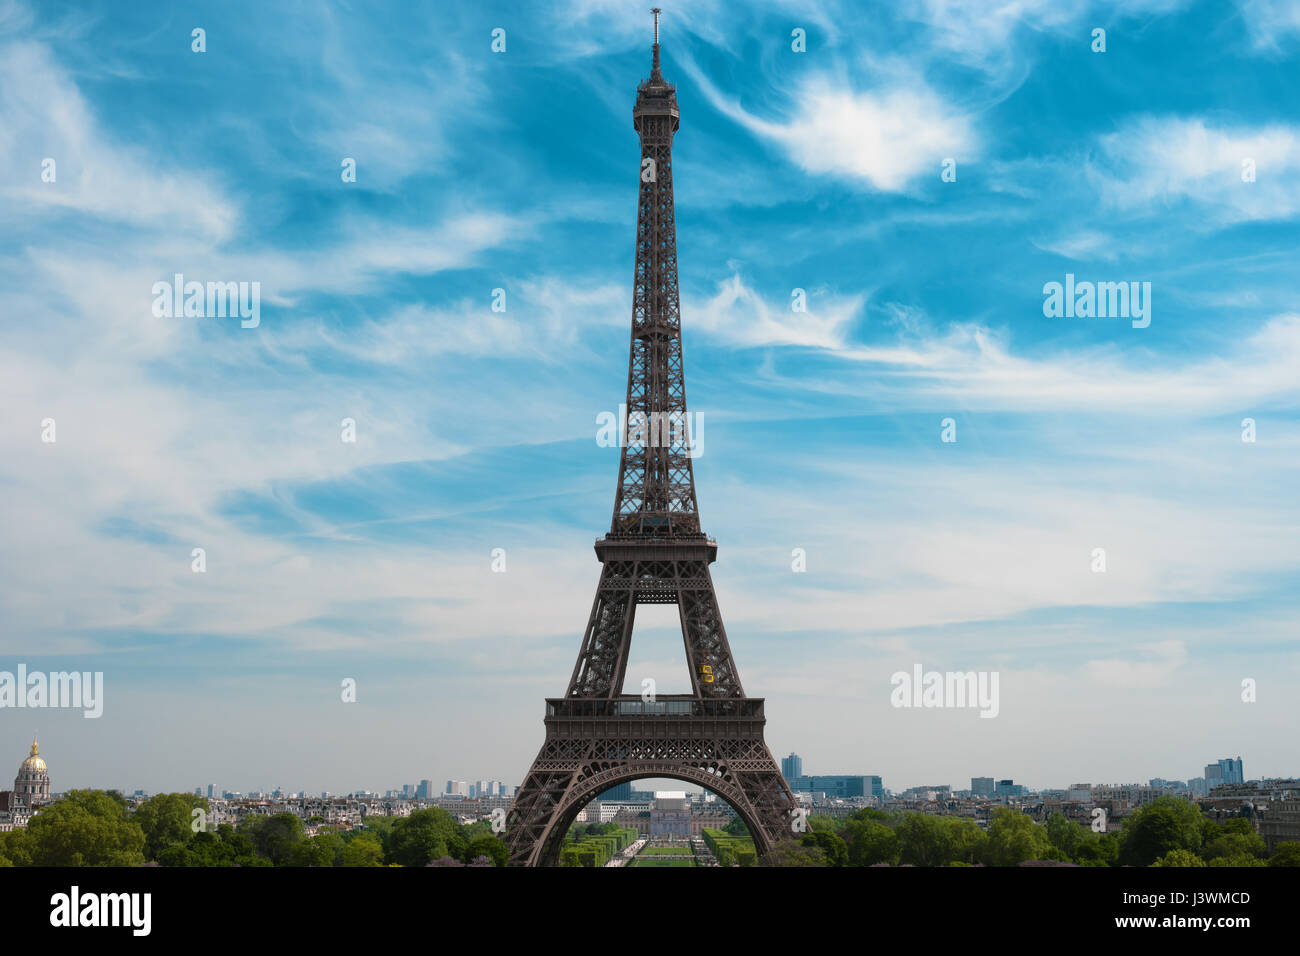 Tour Eiffel et les toits de Paris, France, Europe. Monument célèbre, lieu le plus visité, symbole de Paris. Belle architecture européenne Banque D'Images